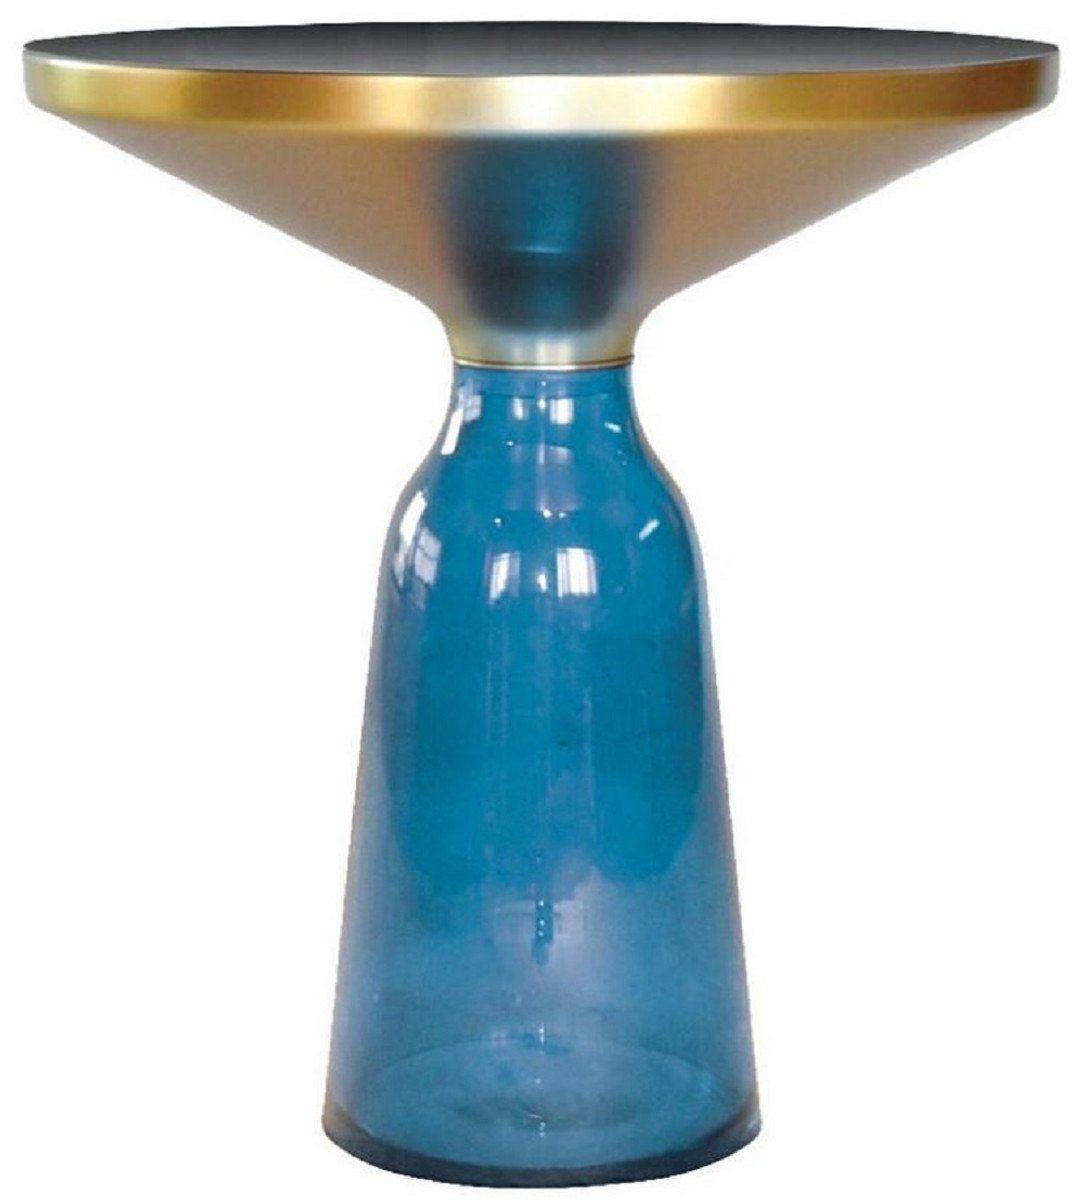 Casa Padrino Beistelltisch Luxus Beistelltisch Schwarz / Blau / Gold Ø 50 x H. 53 cm - Runder Glas Tisch - Moderne Möbel